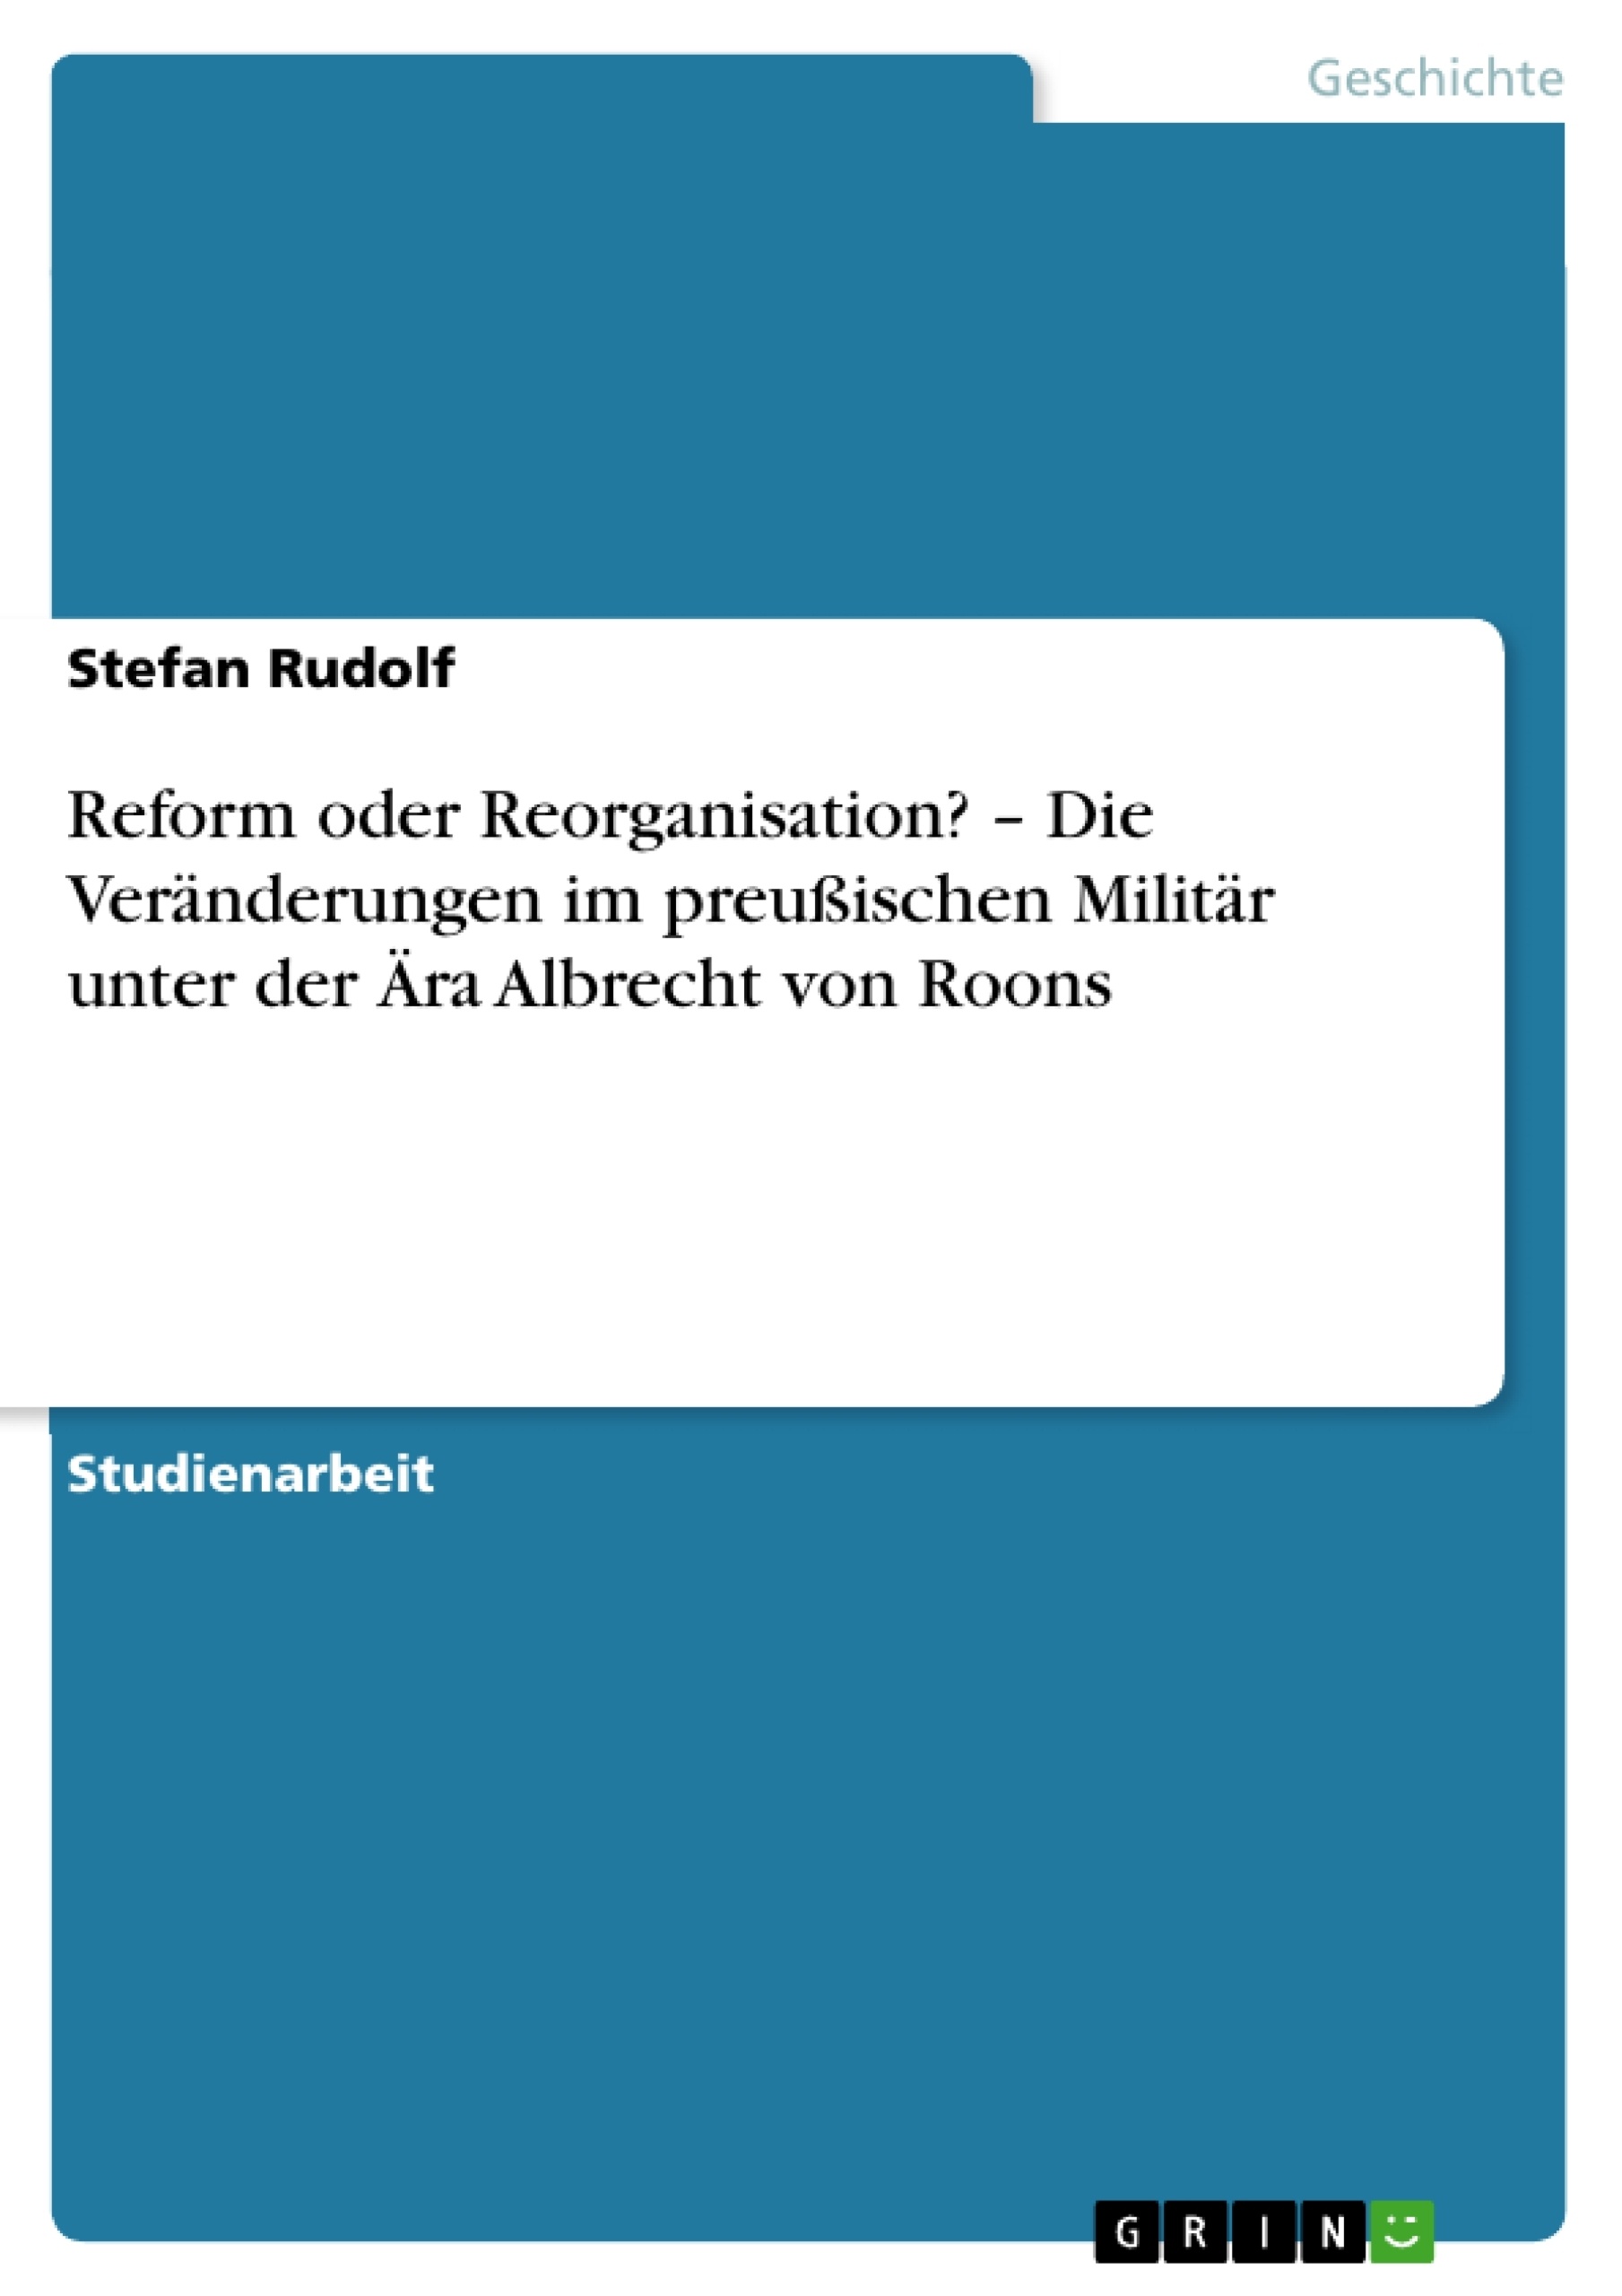 Title: Reform oder Reorganisation? – Die Veränderungen im preußischen Militär unter der Ära Albrecht von Roons